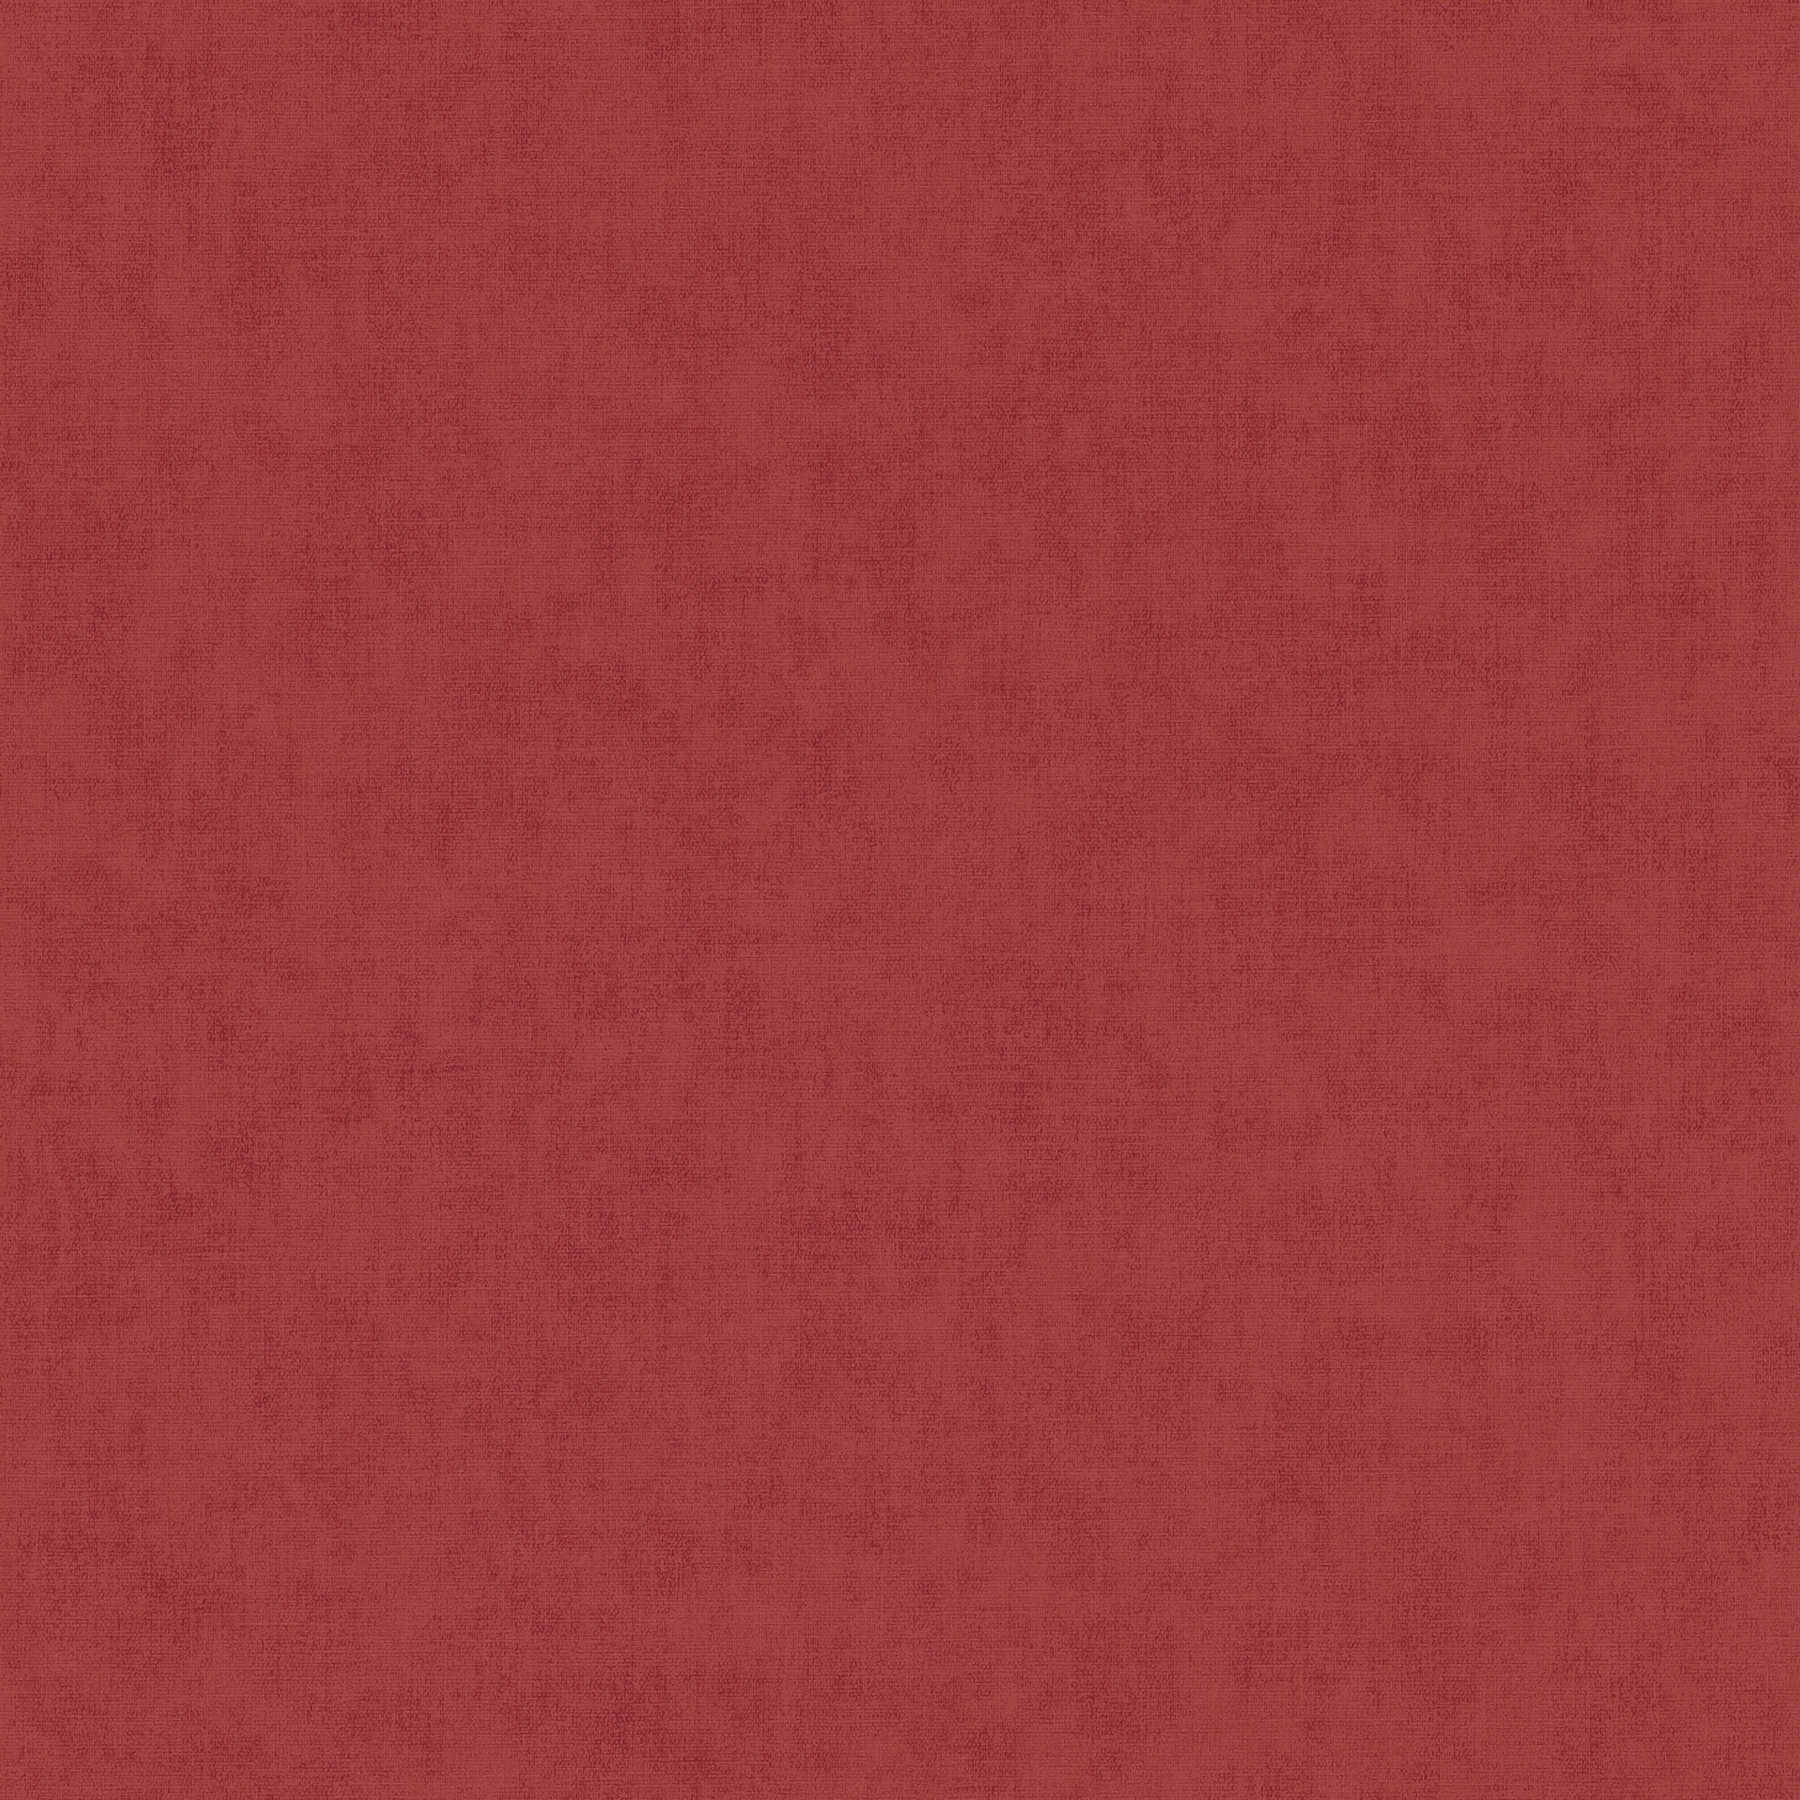 Linnenachtig vliesbehang met subtiel patroon - rood
